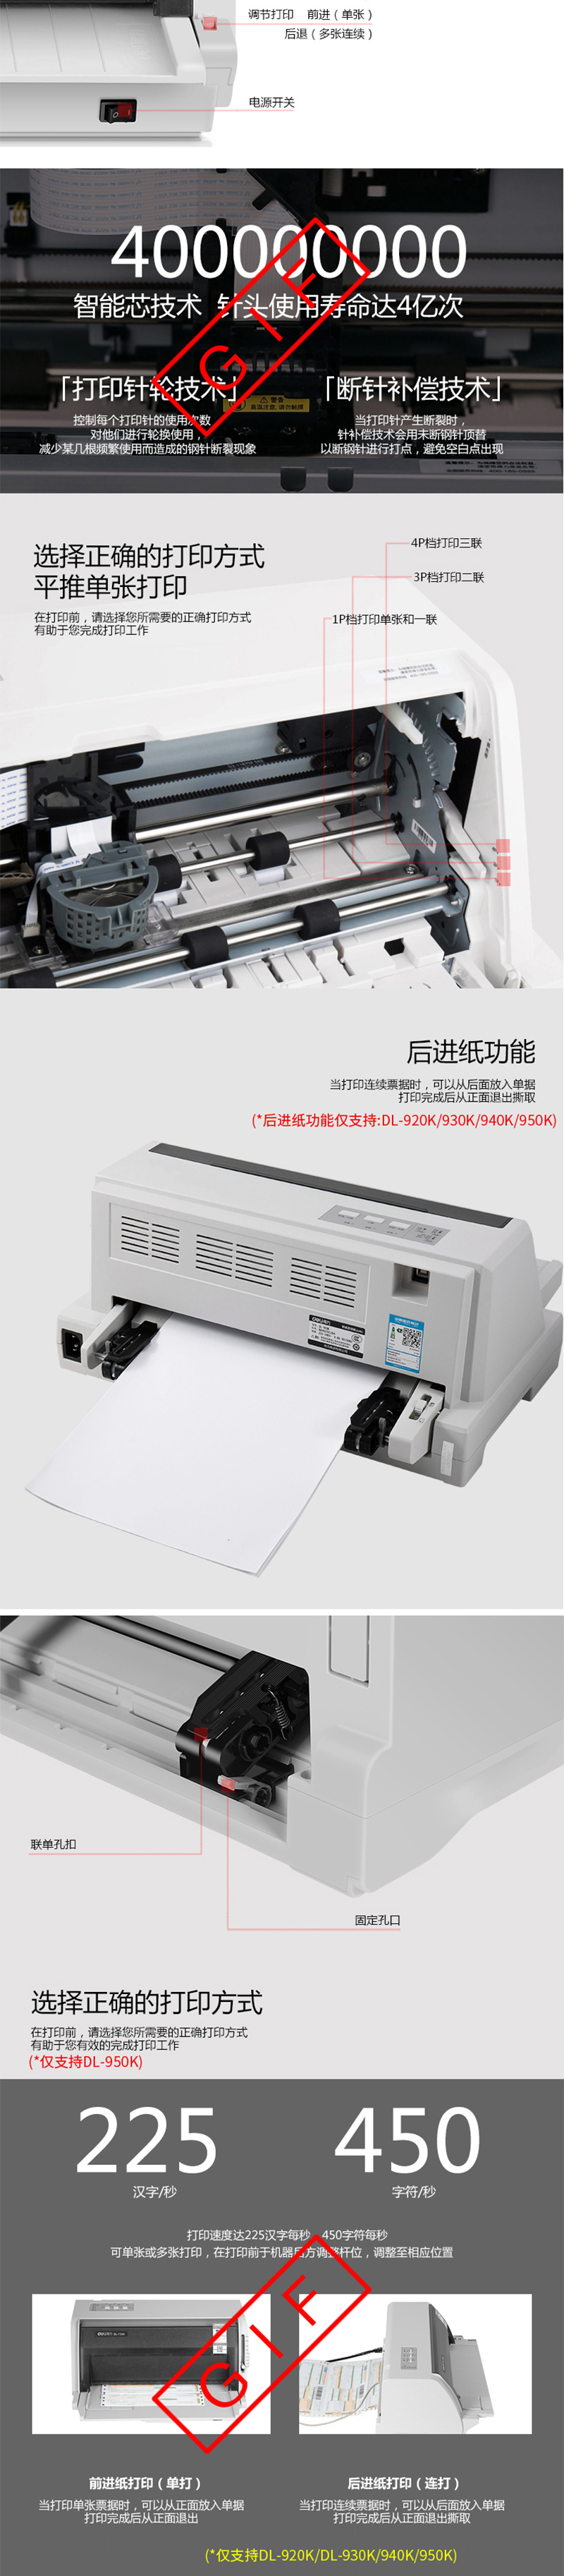 得力DL-910K 针式打印机